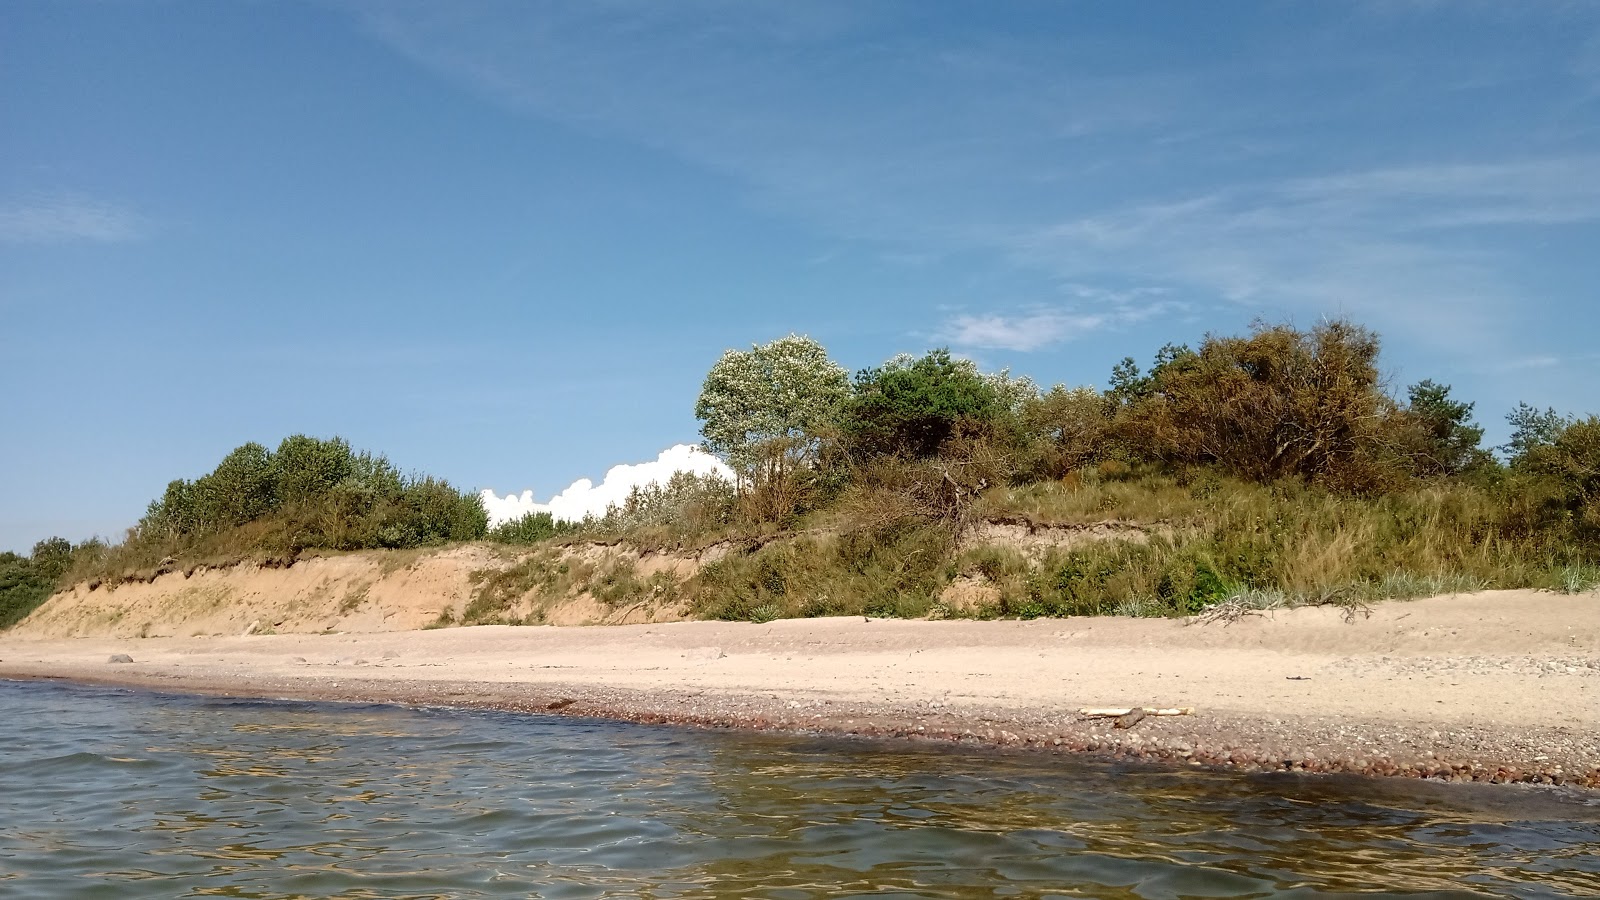 Zdjęcie Palangos beach z powierzchnią piasek z kamykami